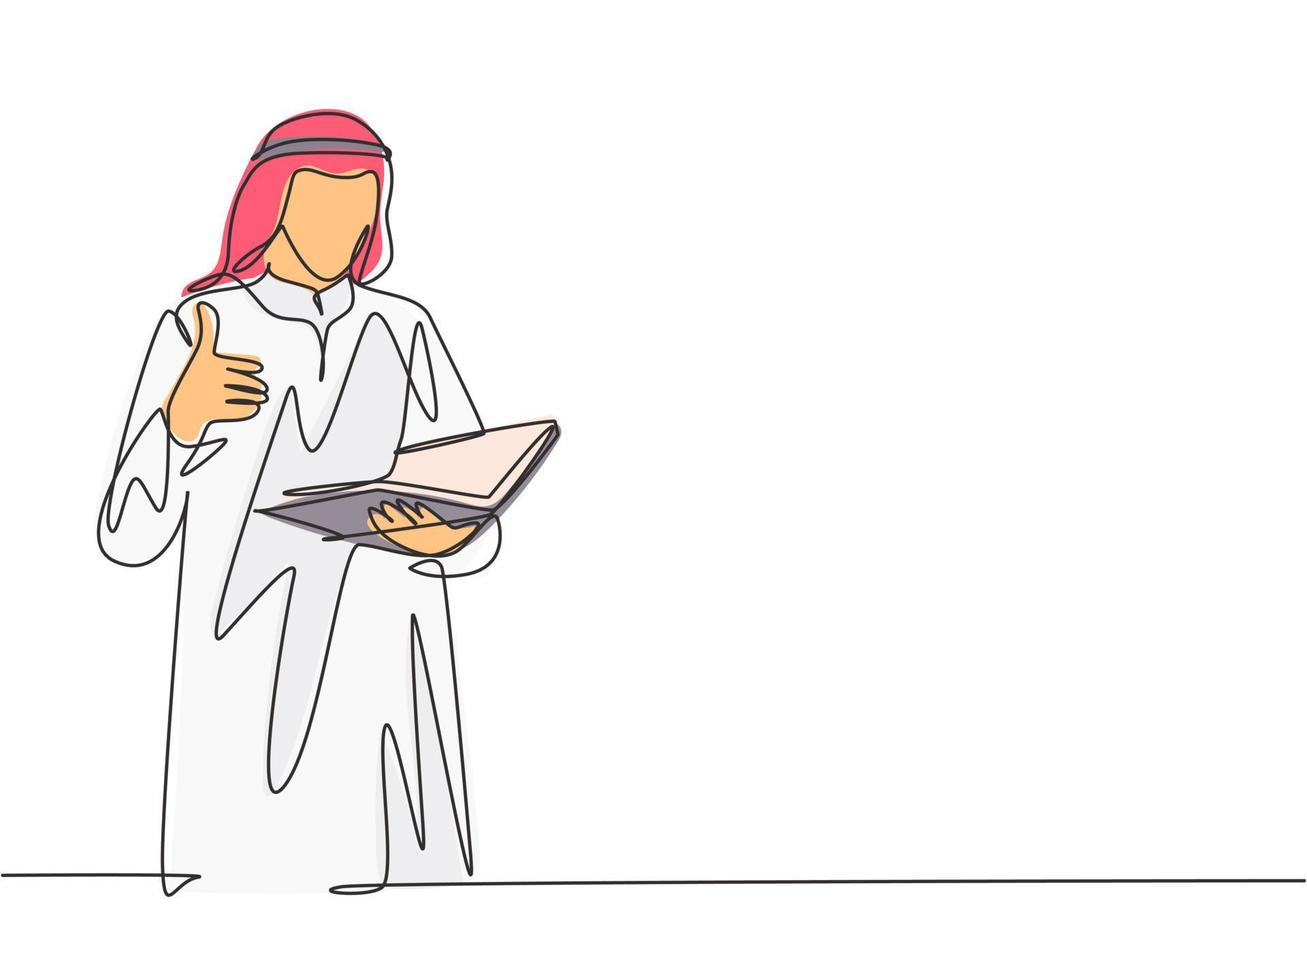 un dibujo de una sola línea de un joven empresario musulmán dando pulgares hacia arriba mientras lee un libro. tela de arabia saudita kandora, pañuelo en la cabeza, ghutra. Ilustración de vector de diseño de dibujo de línea continua